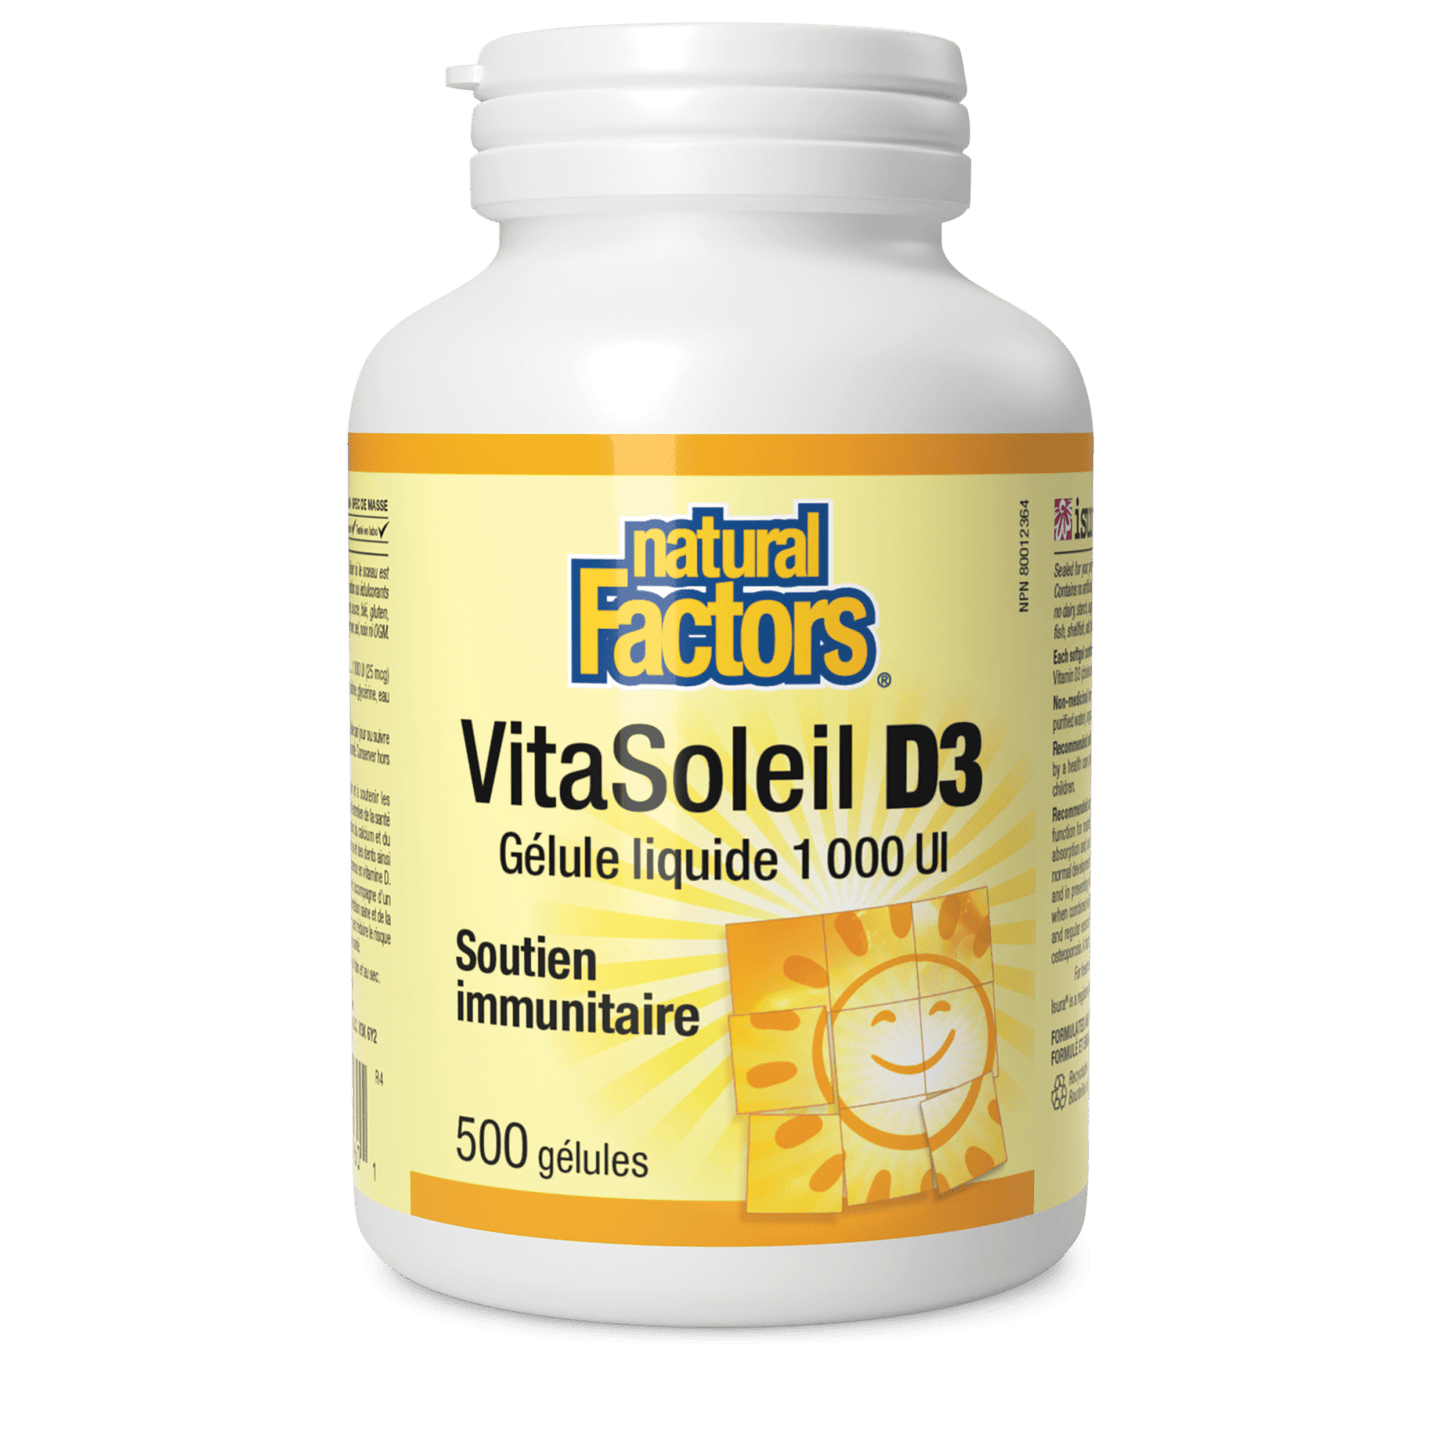 VitaSoleil D3 gélules 1 000 UI, Natural Factors|v|image|1060